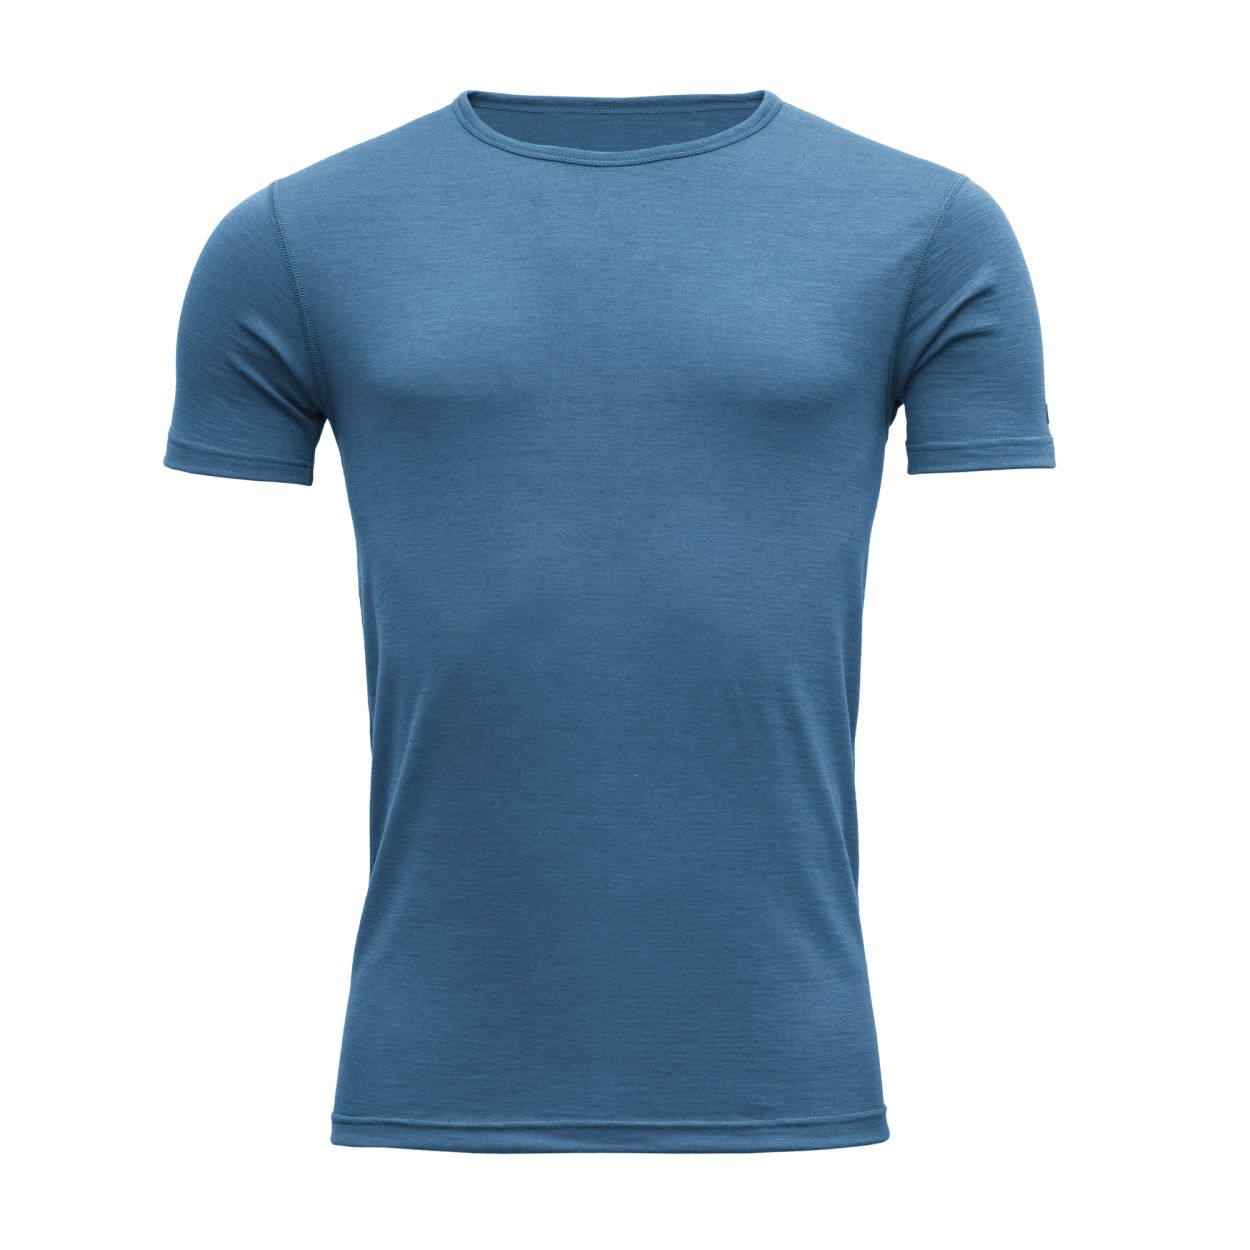 Breeze Man T-Shirt, blue melange